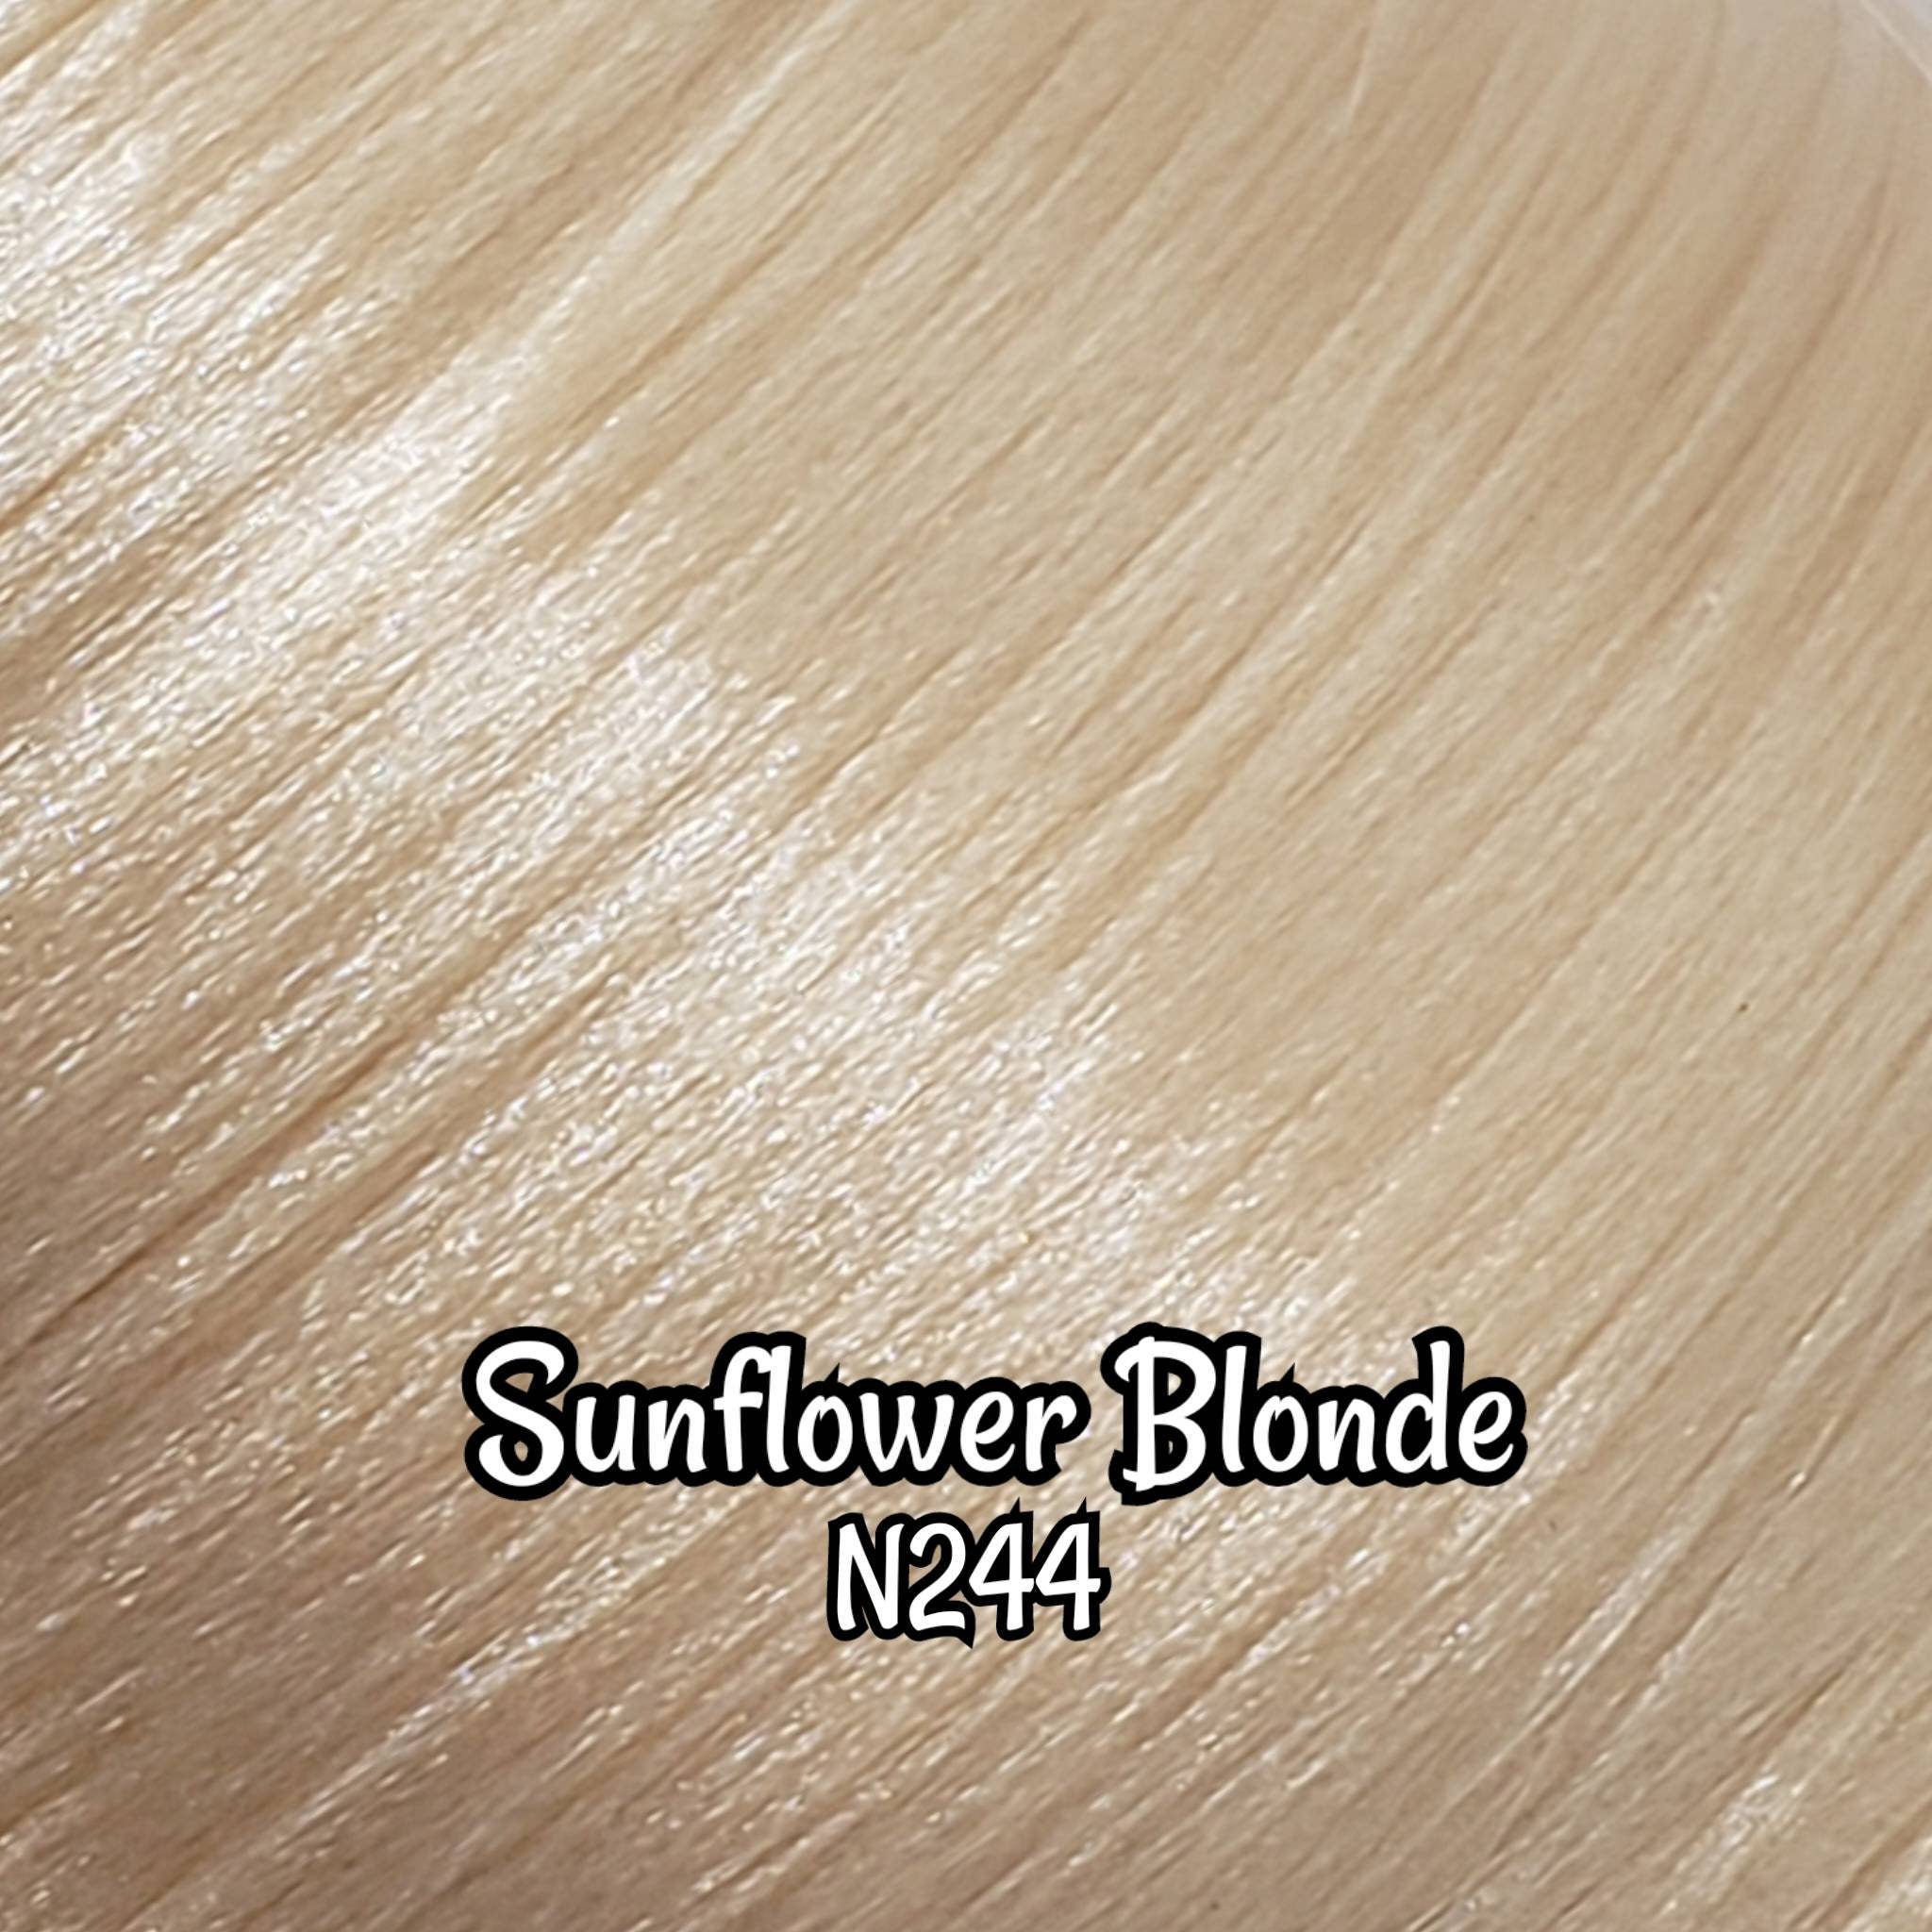 DG-HQ™ Nylon Sunflower Blonde N244 36 Inch 1oz/28g Hank